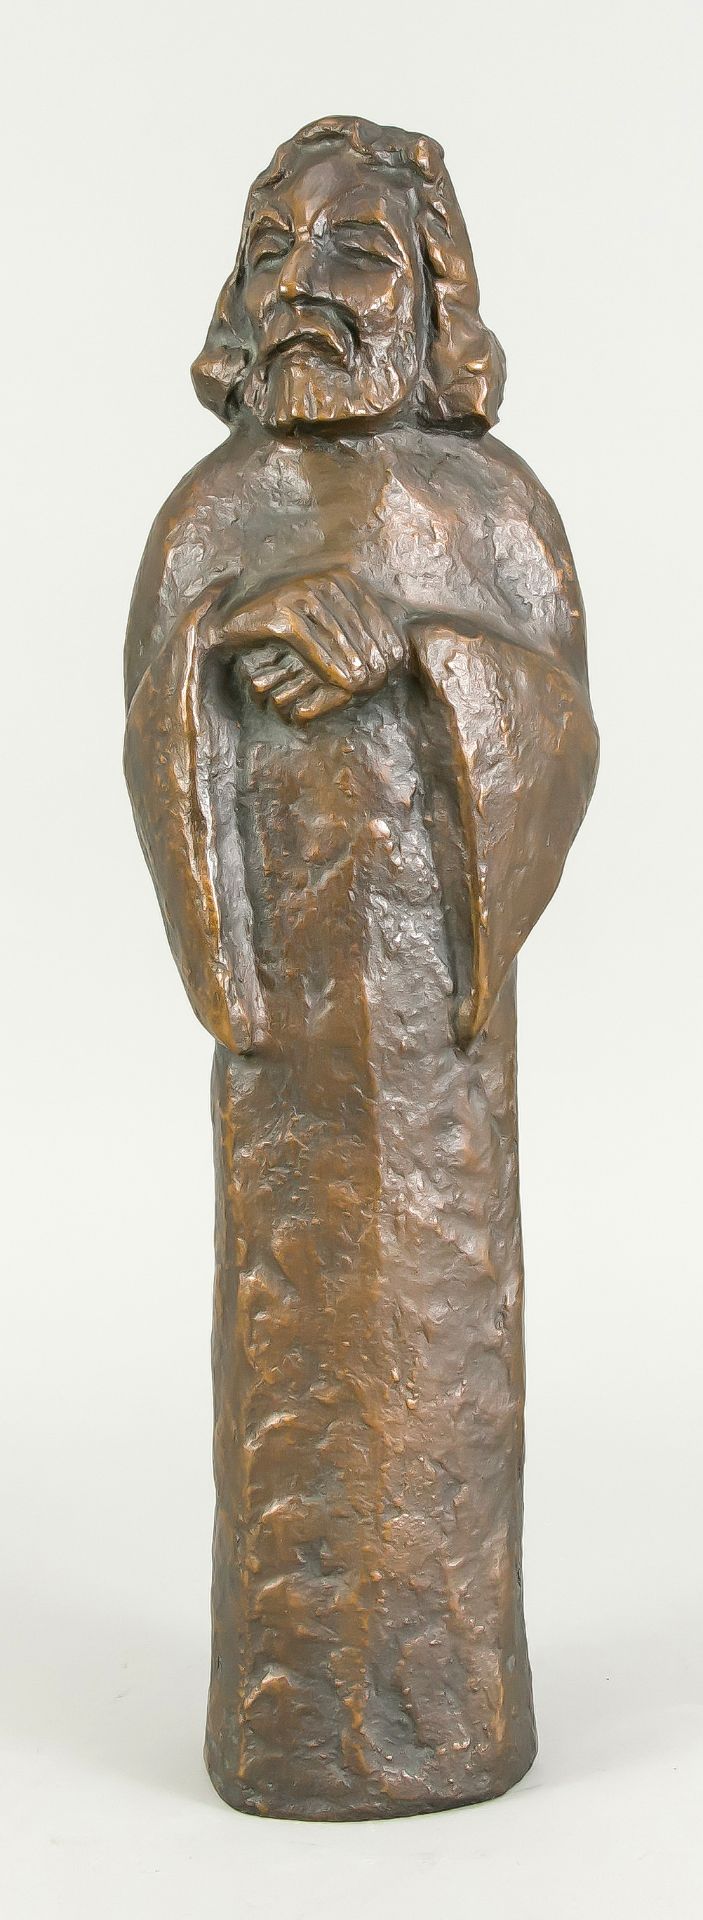 Friedrich Franz Viegener (1888-1976), "Der Lehrer", Standfigur, patinierte Bronze, rückseiti